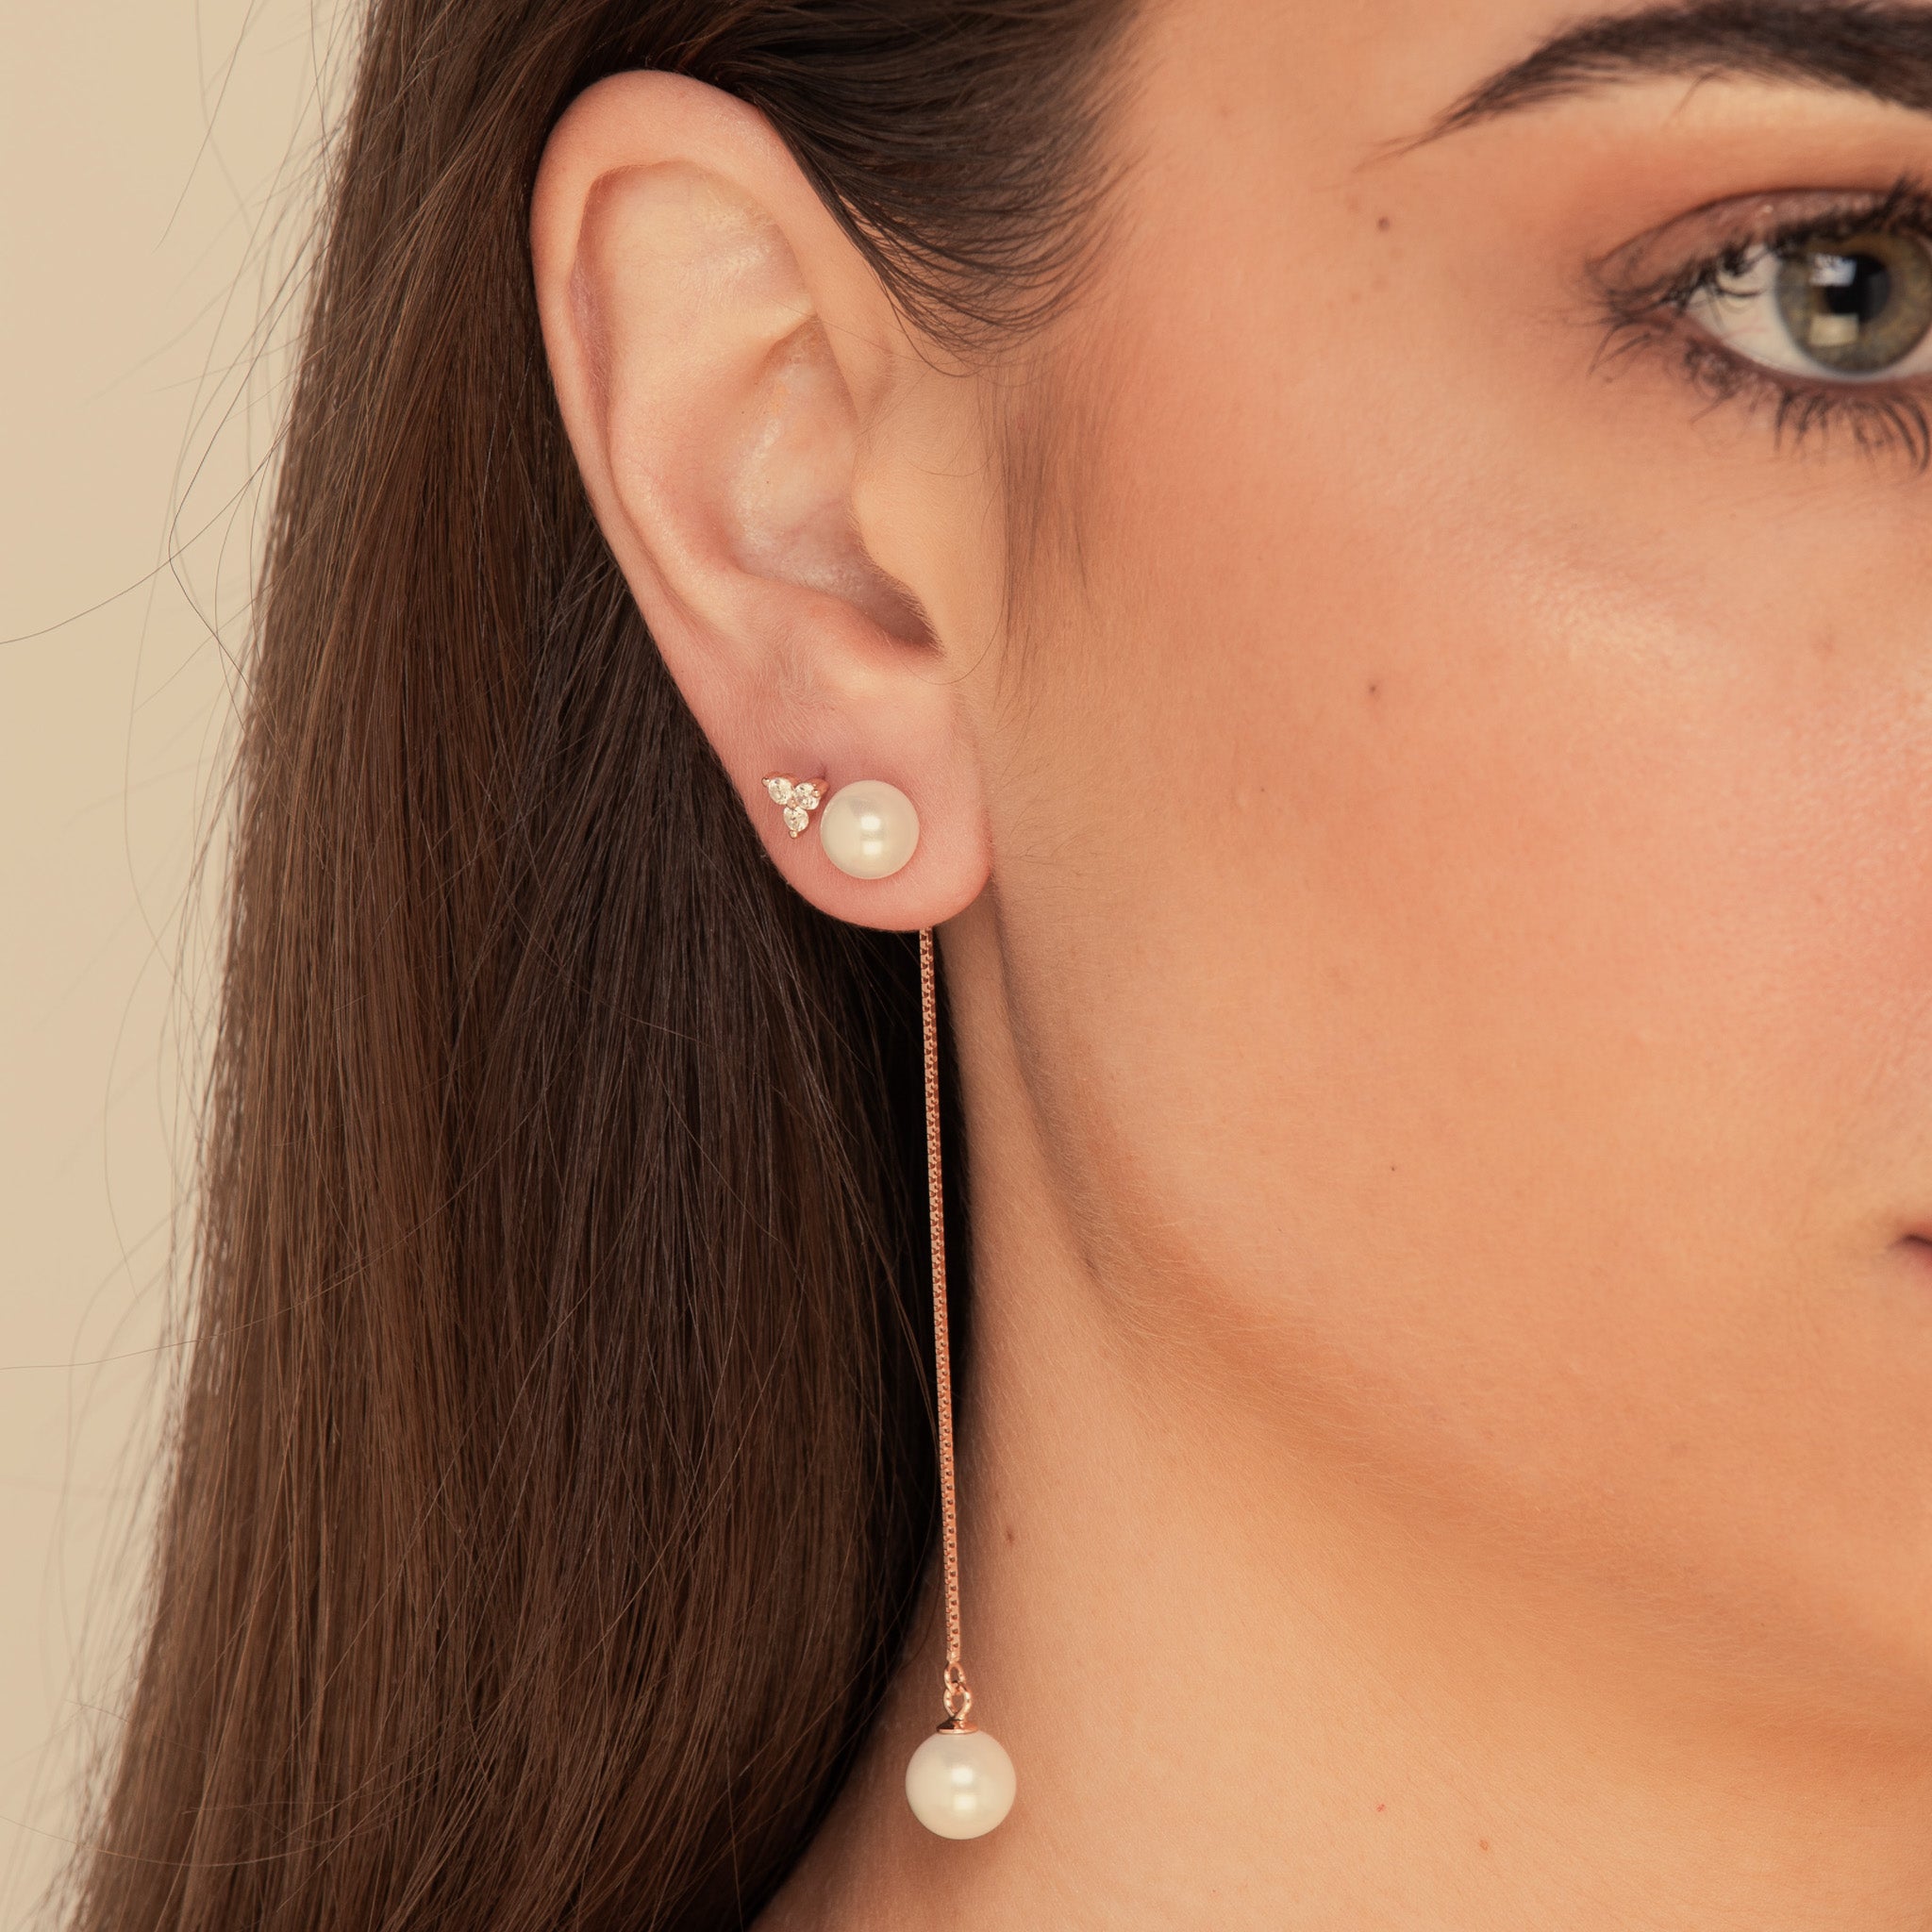 Freshwater Pearl Twin Drop Earrings